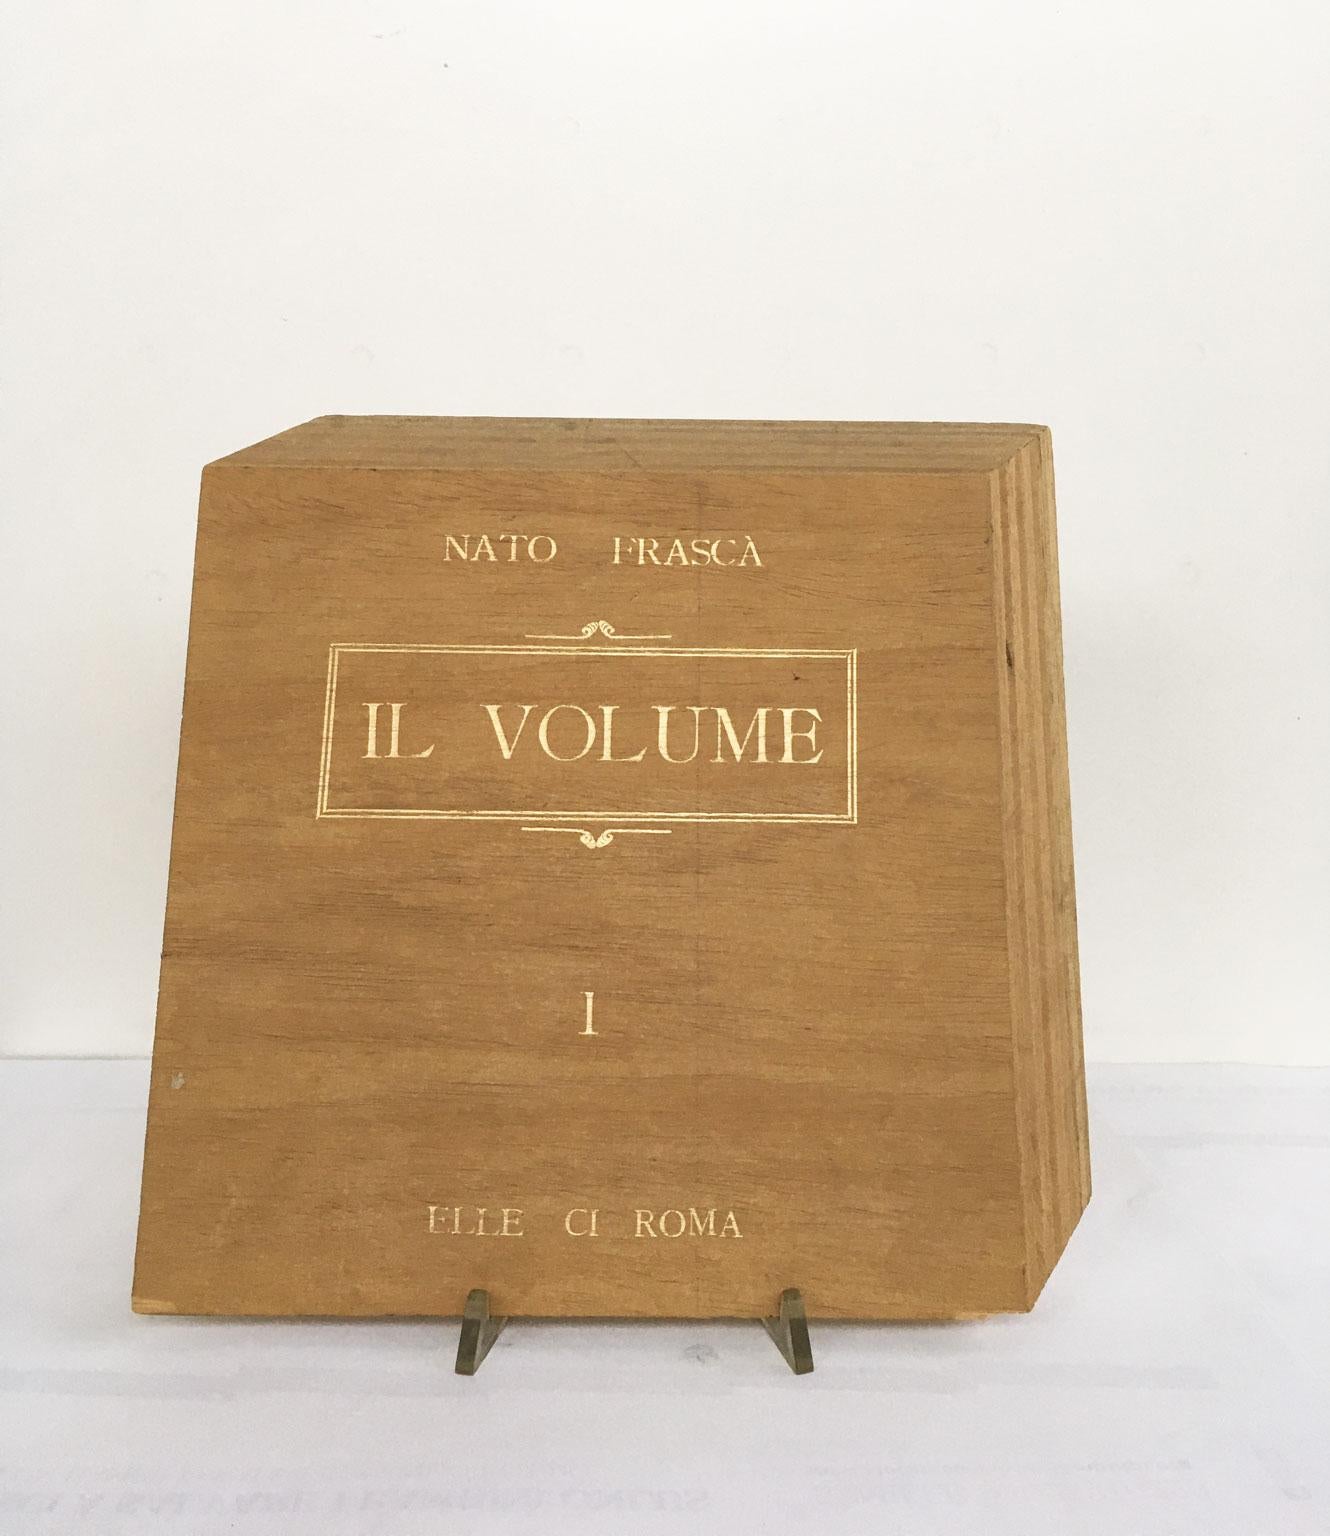 Dieses intensive und fesselnde Kunstwerk wurde von dem italienischen Künstler Nato Frascà geschaffen.
Der Titel lautet "Il Volume", übersetzt "Das Buch". 
Dies ist ein Vielfaches von 50 Exemplaren und dieses Stück wurde aus Holz mit goldenen